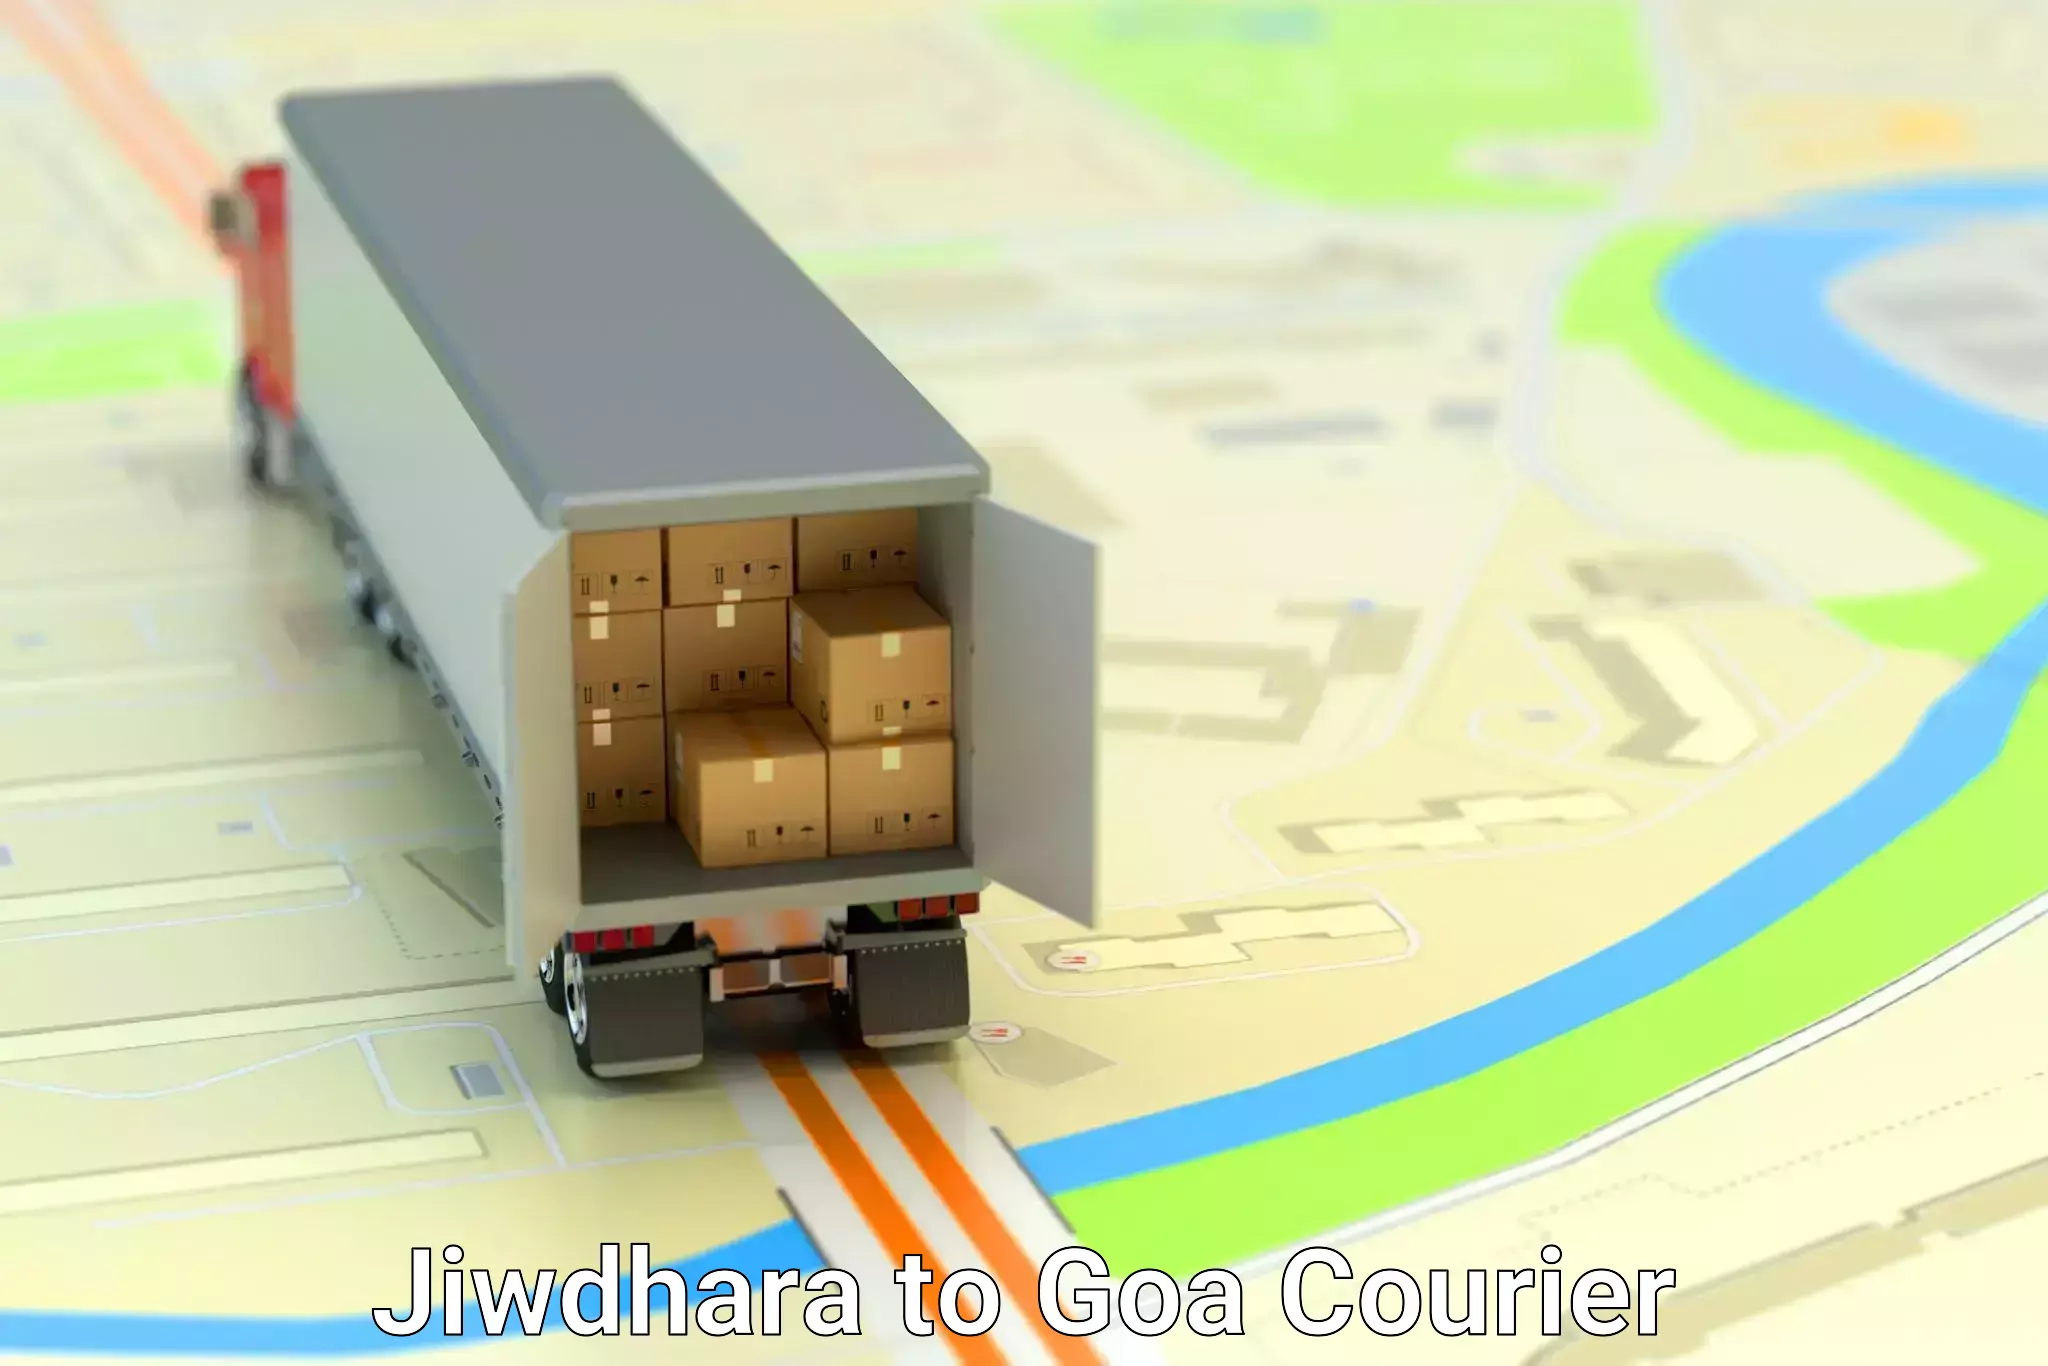 Furniture moving experts Jiwdhara to Goa University